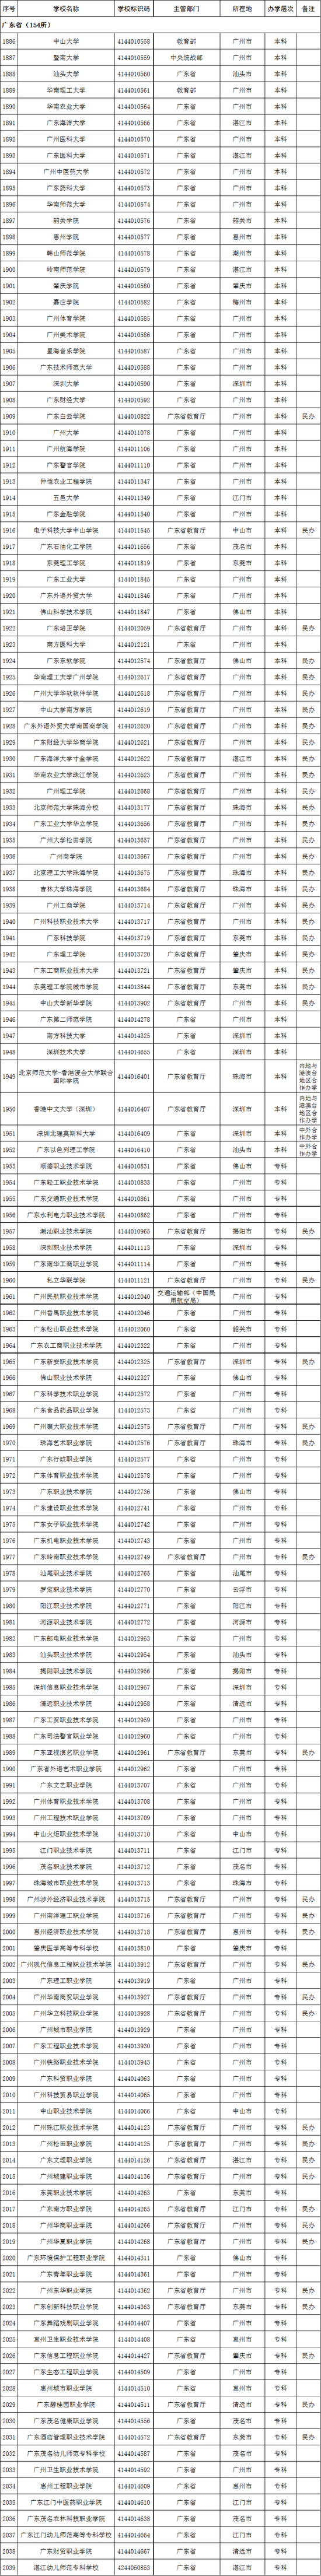 2020年广东省高校名单(154所)